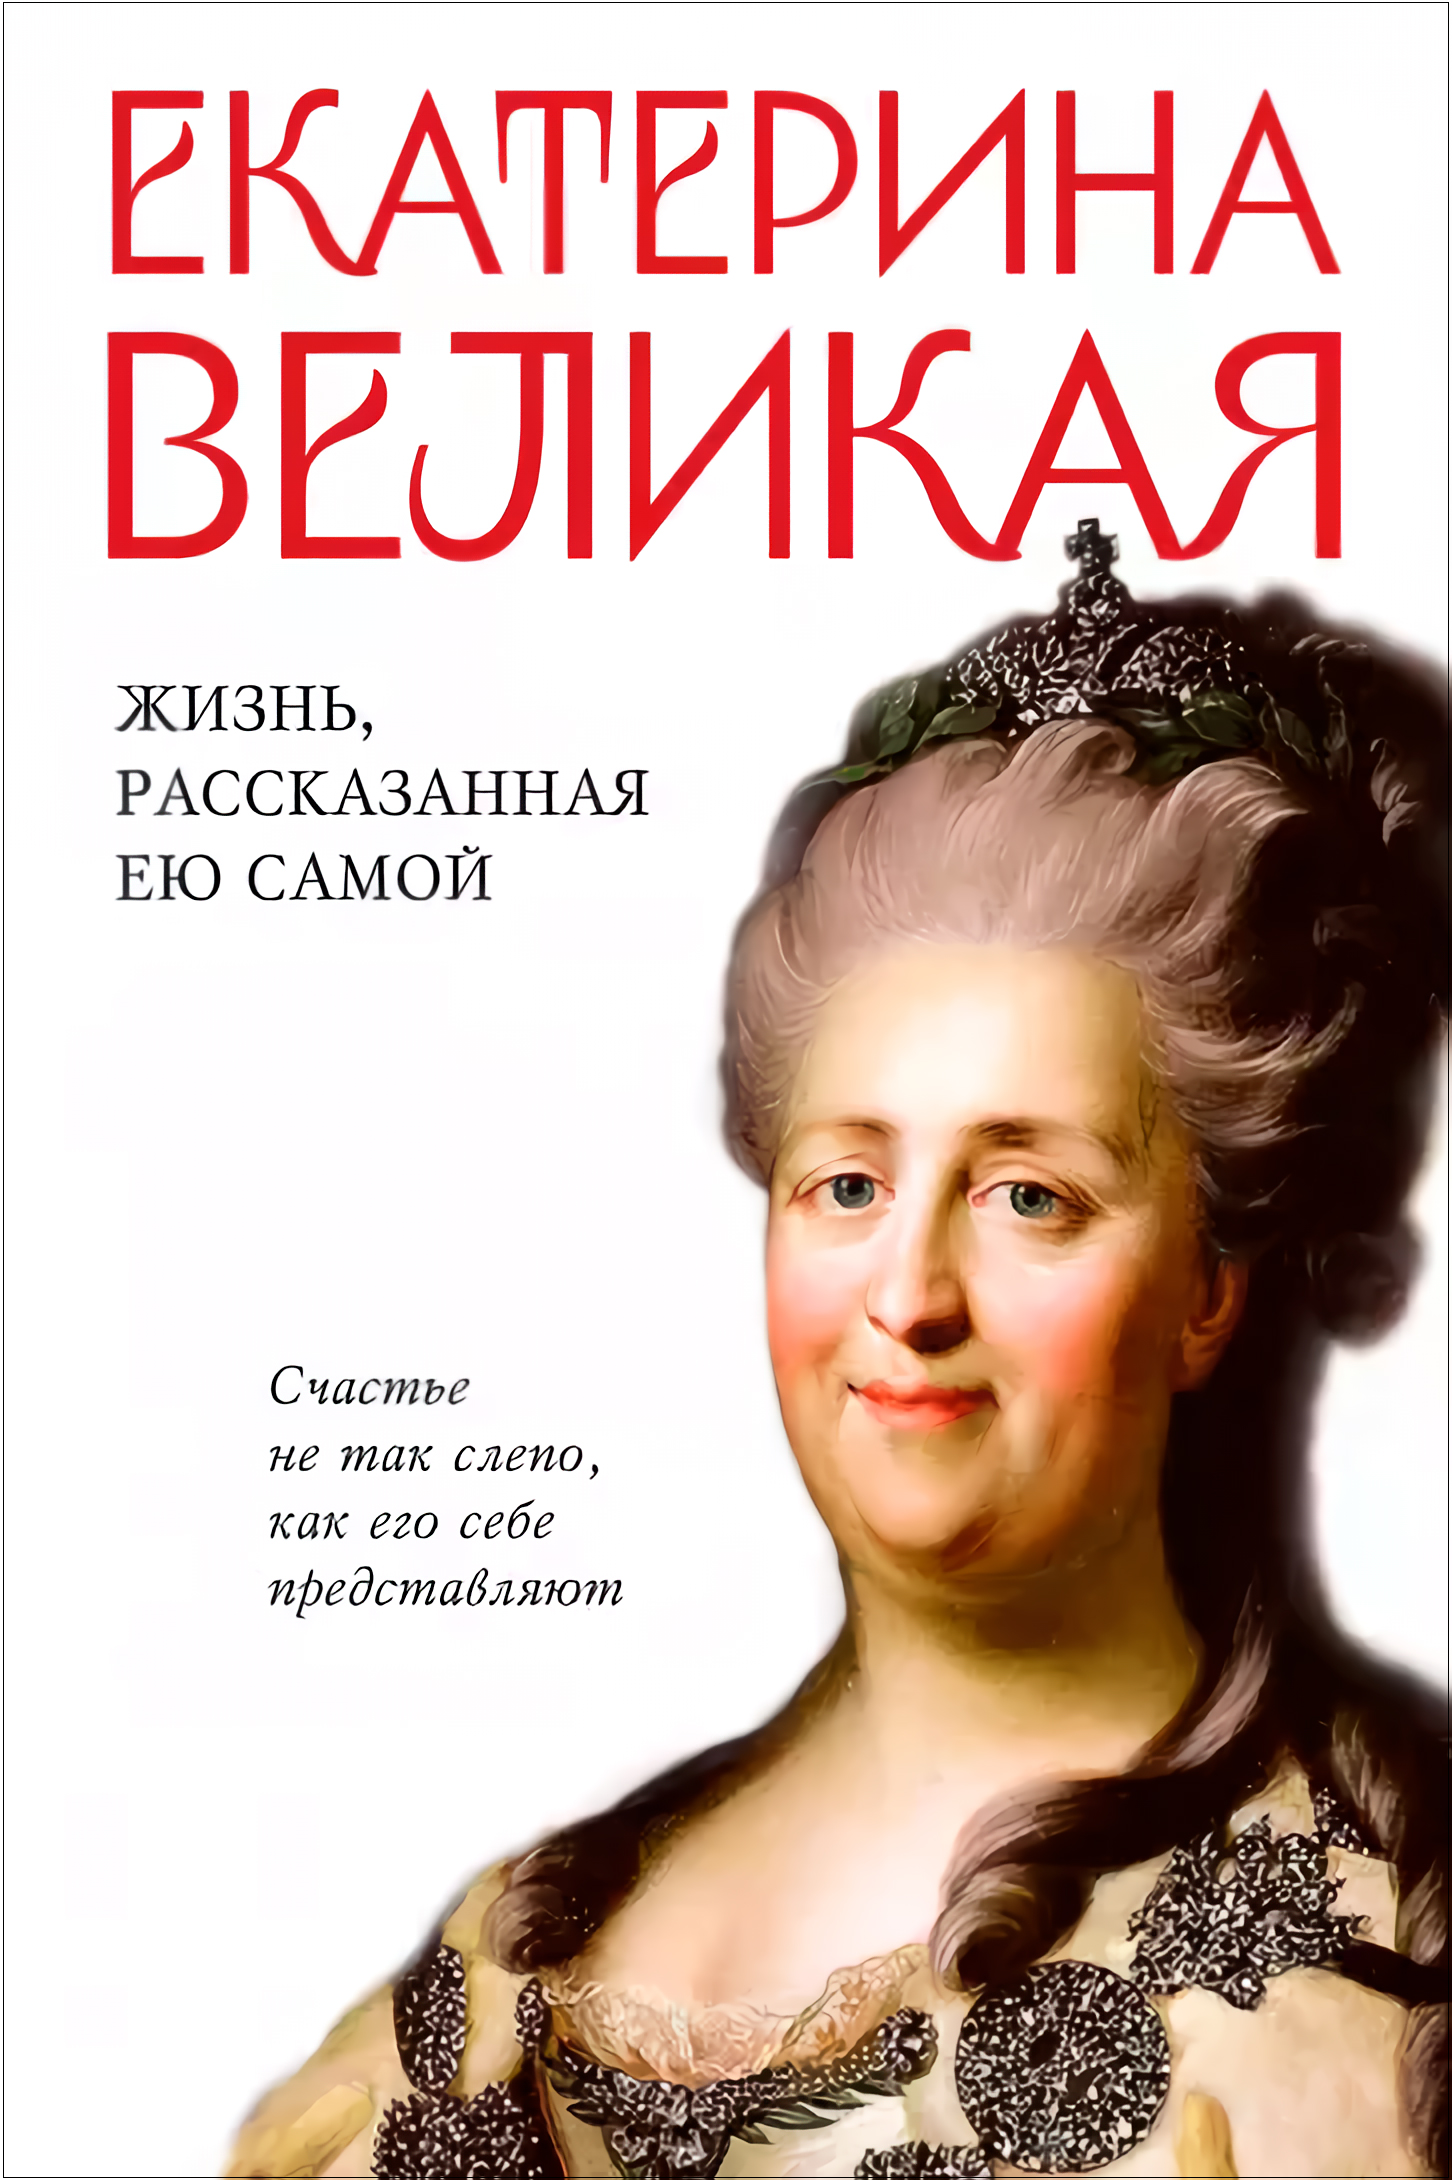 Екатерина Великая: Жизнь, рассказанная ею самой